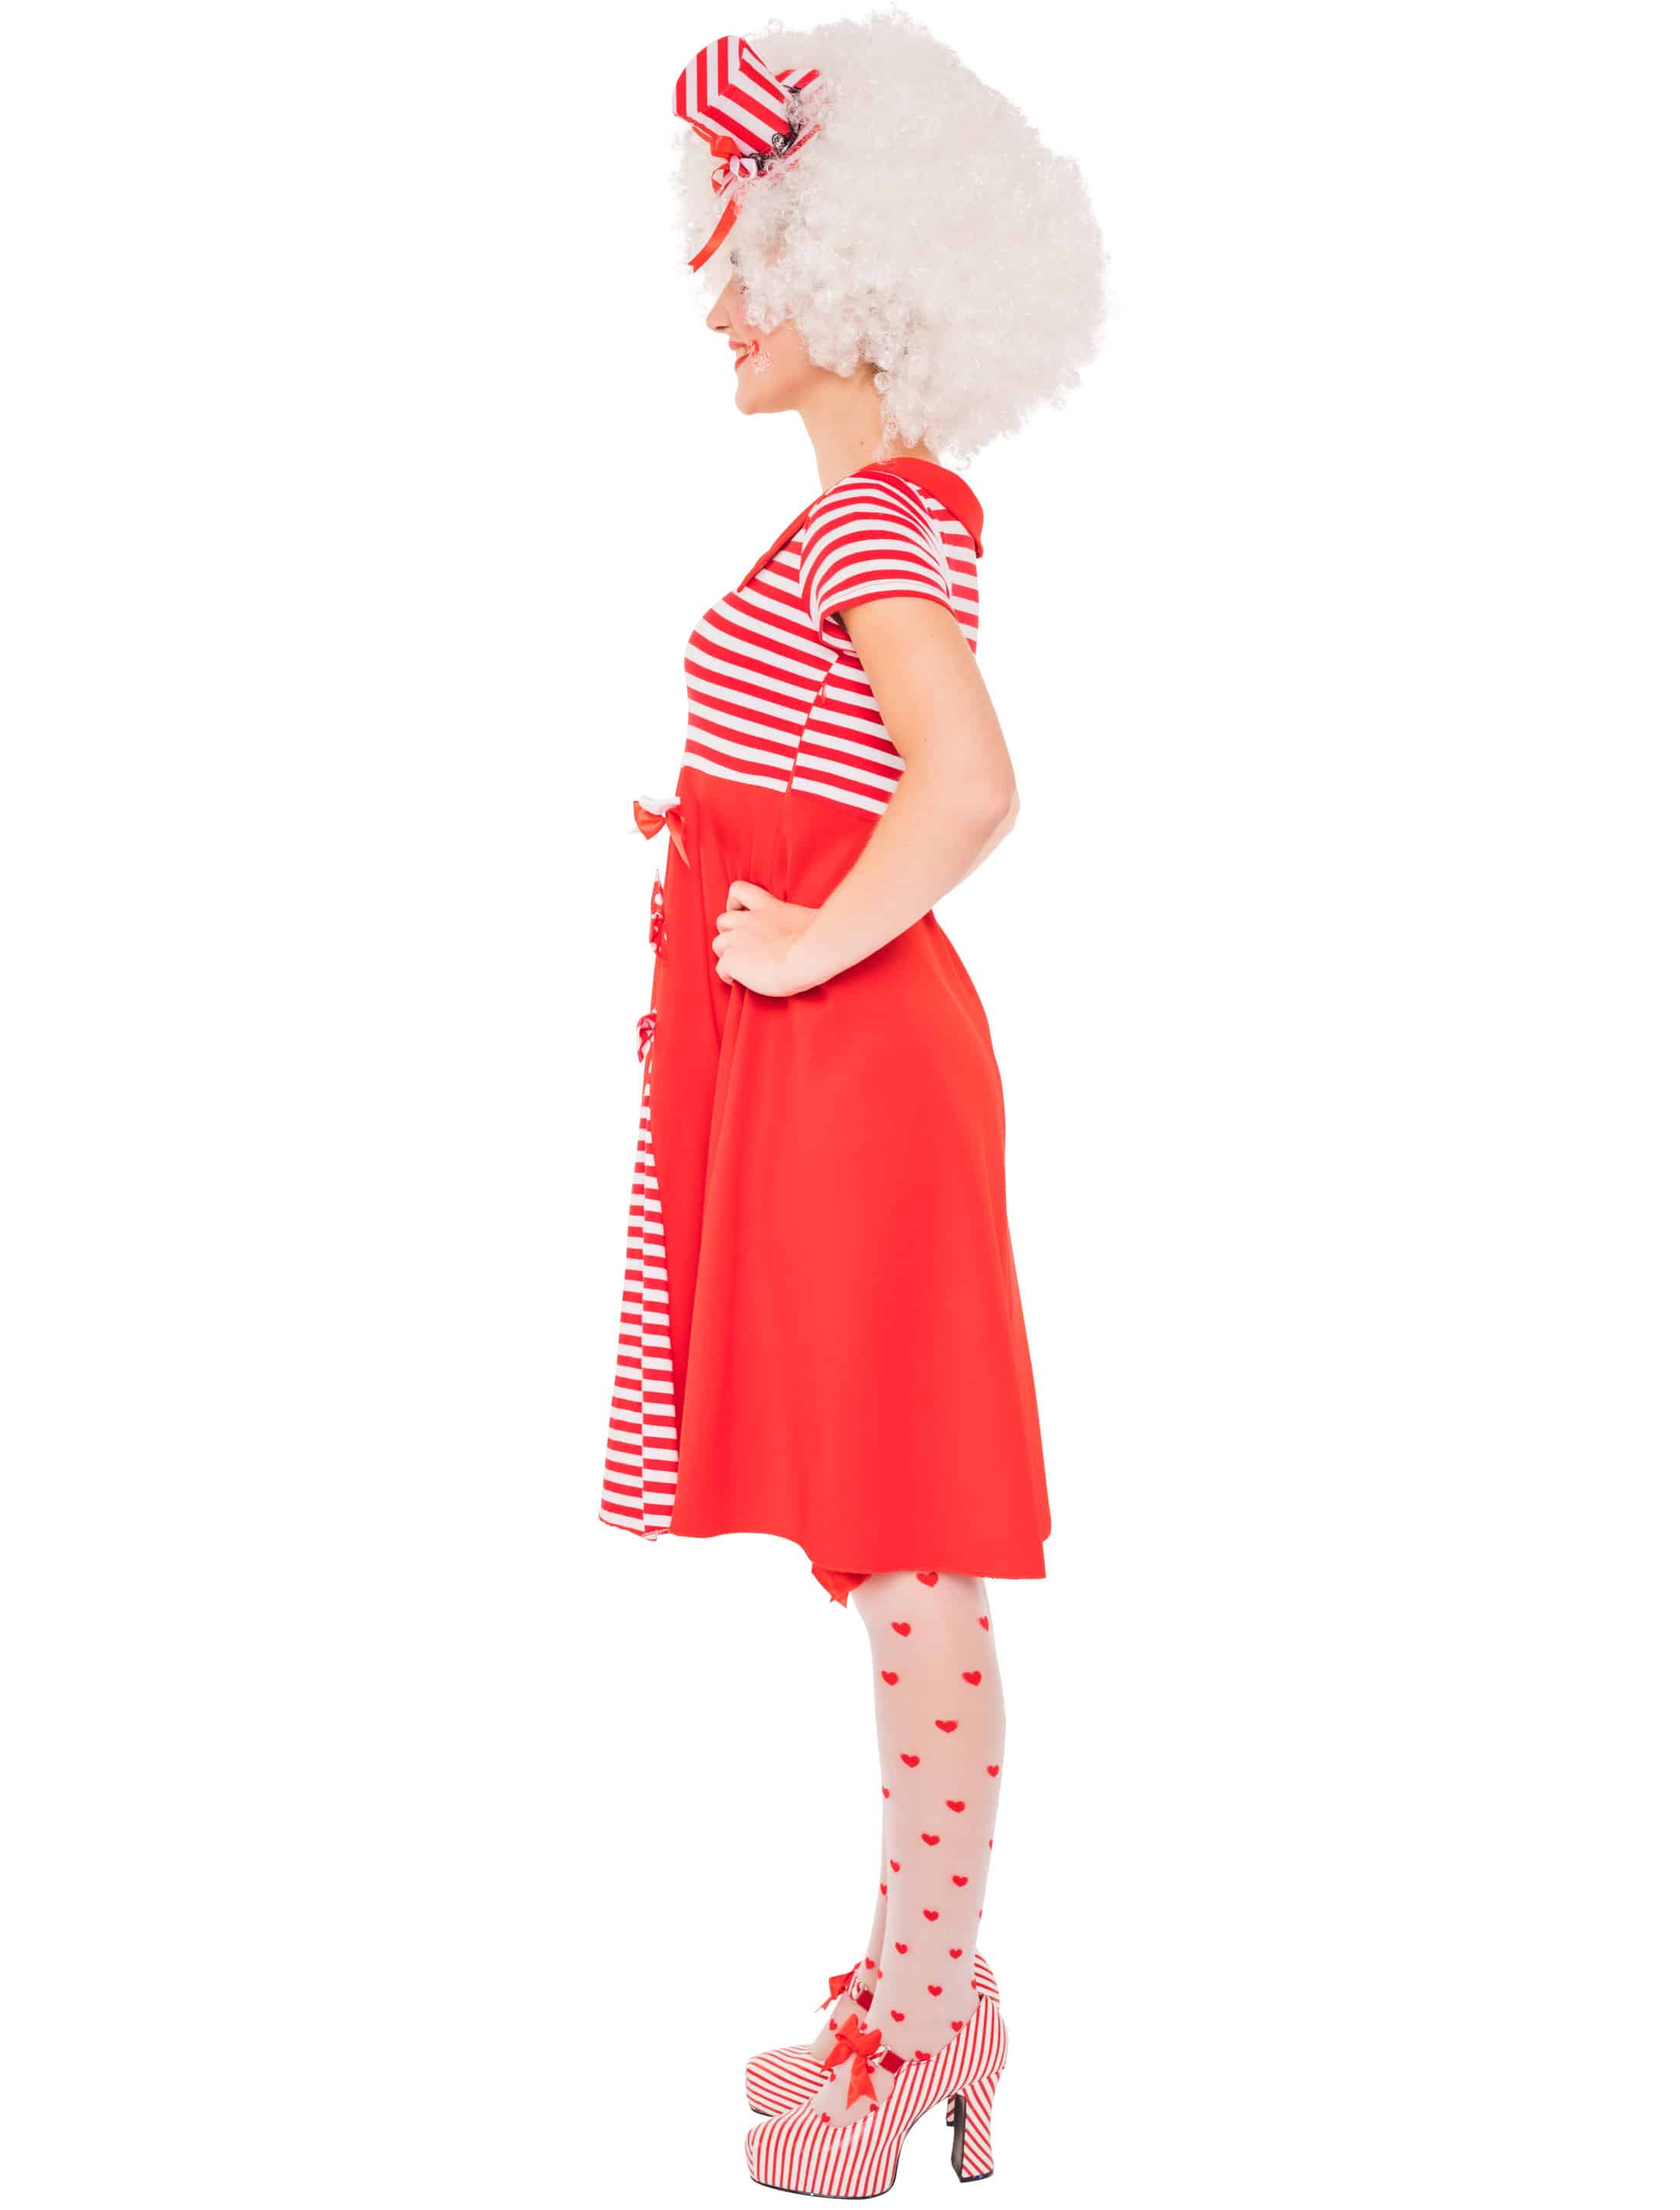 Kleid mit 3 Schleifen Damen rot/weiß L/XL